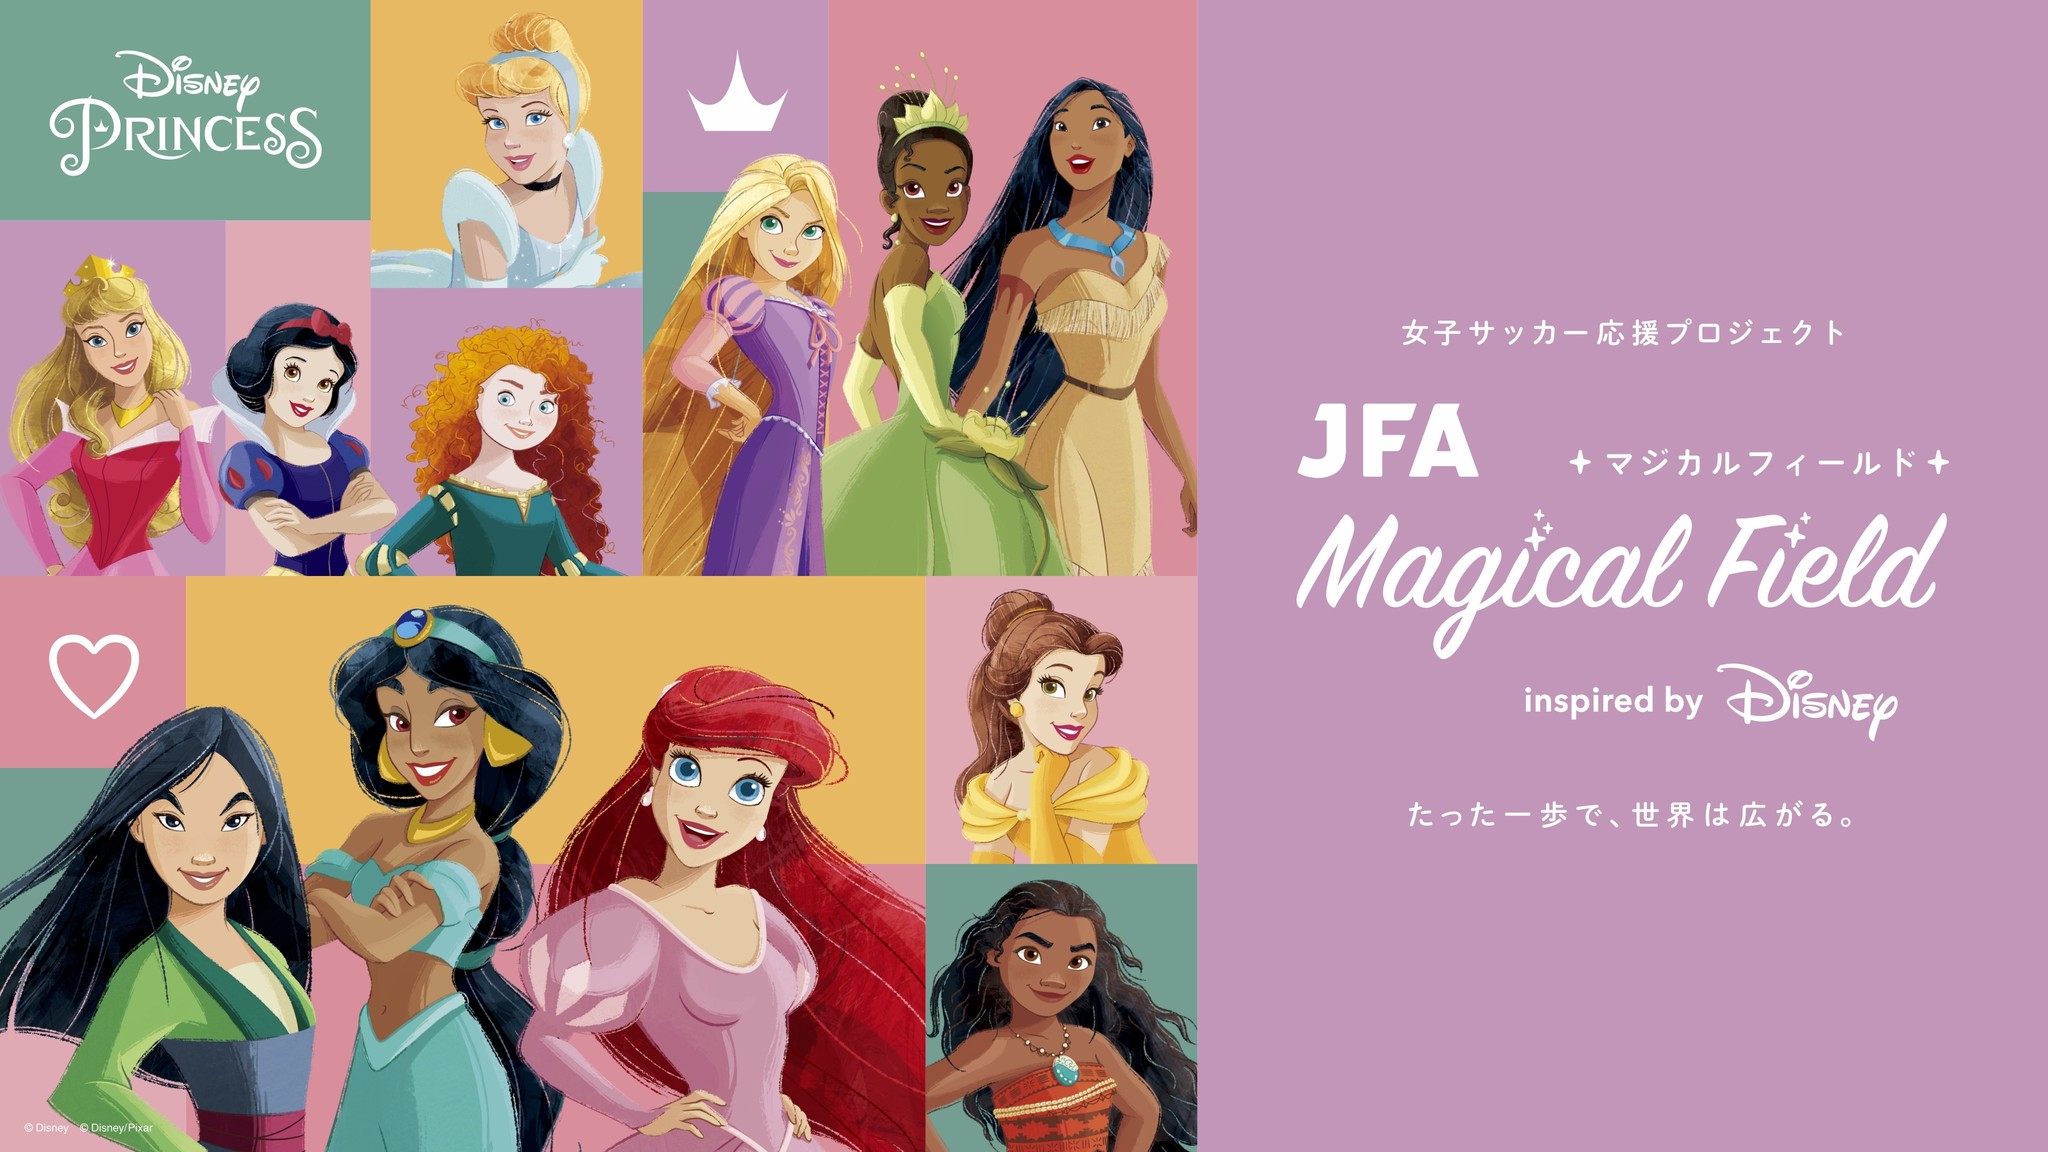 新しい世界へ踏み出す第一歩を応援する女子サッカーの新プロジェクト Jfa Magical Field Inspired By Disney 発足 ウォルト ディズニー ジャパン株式会社のプレスリリース